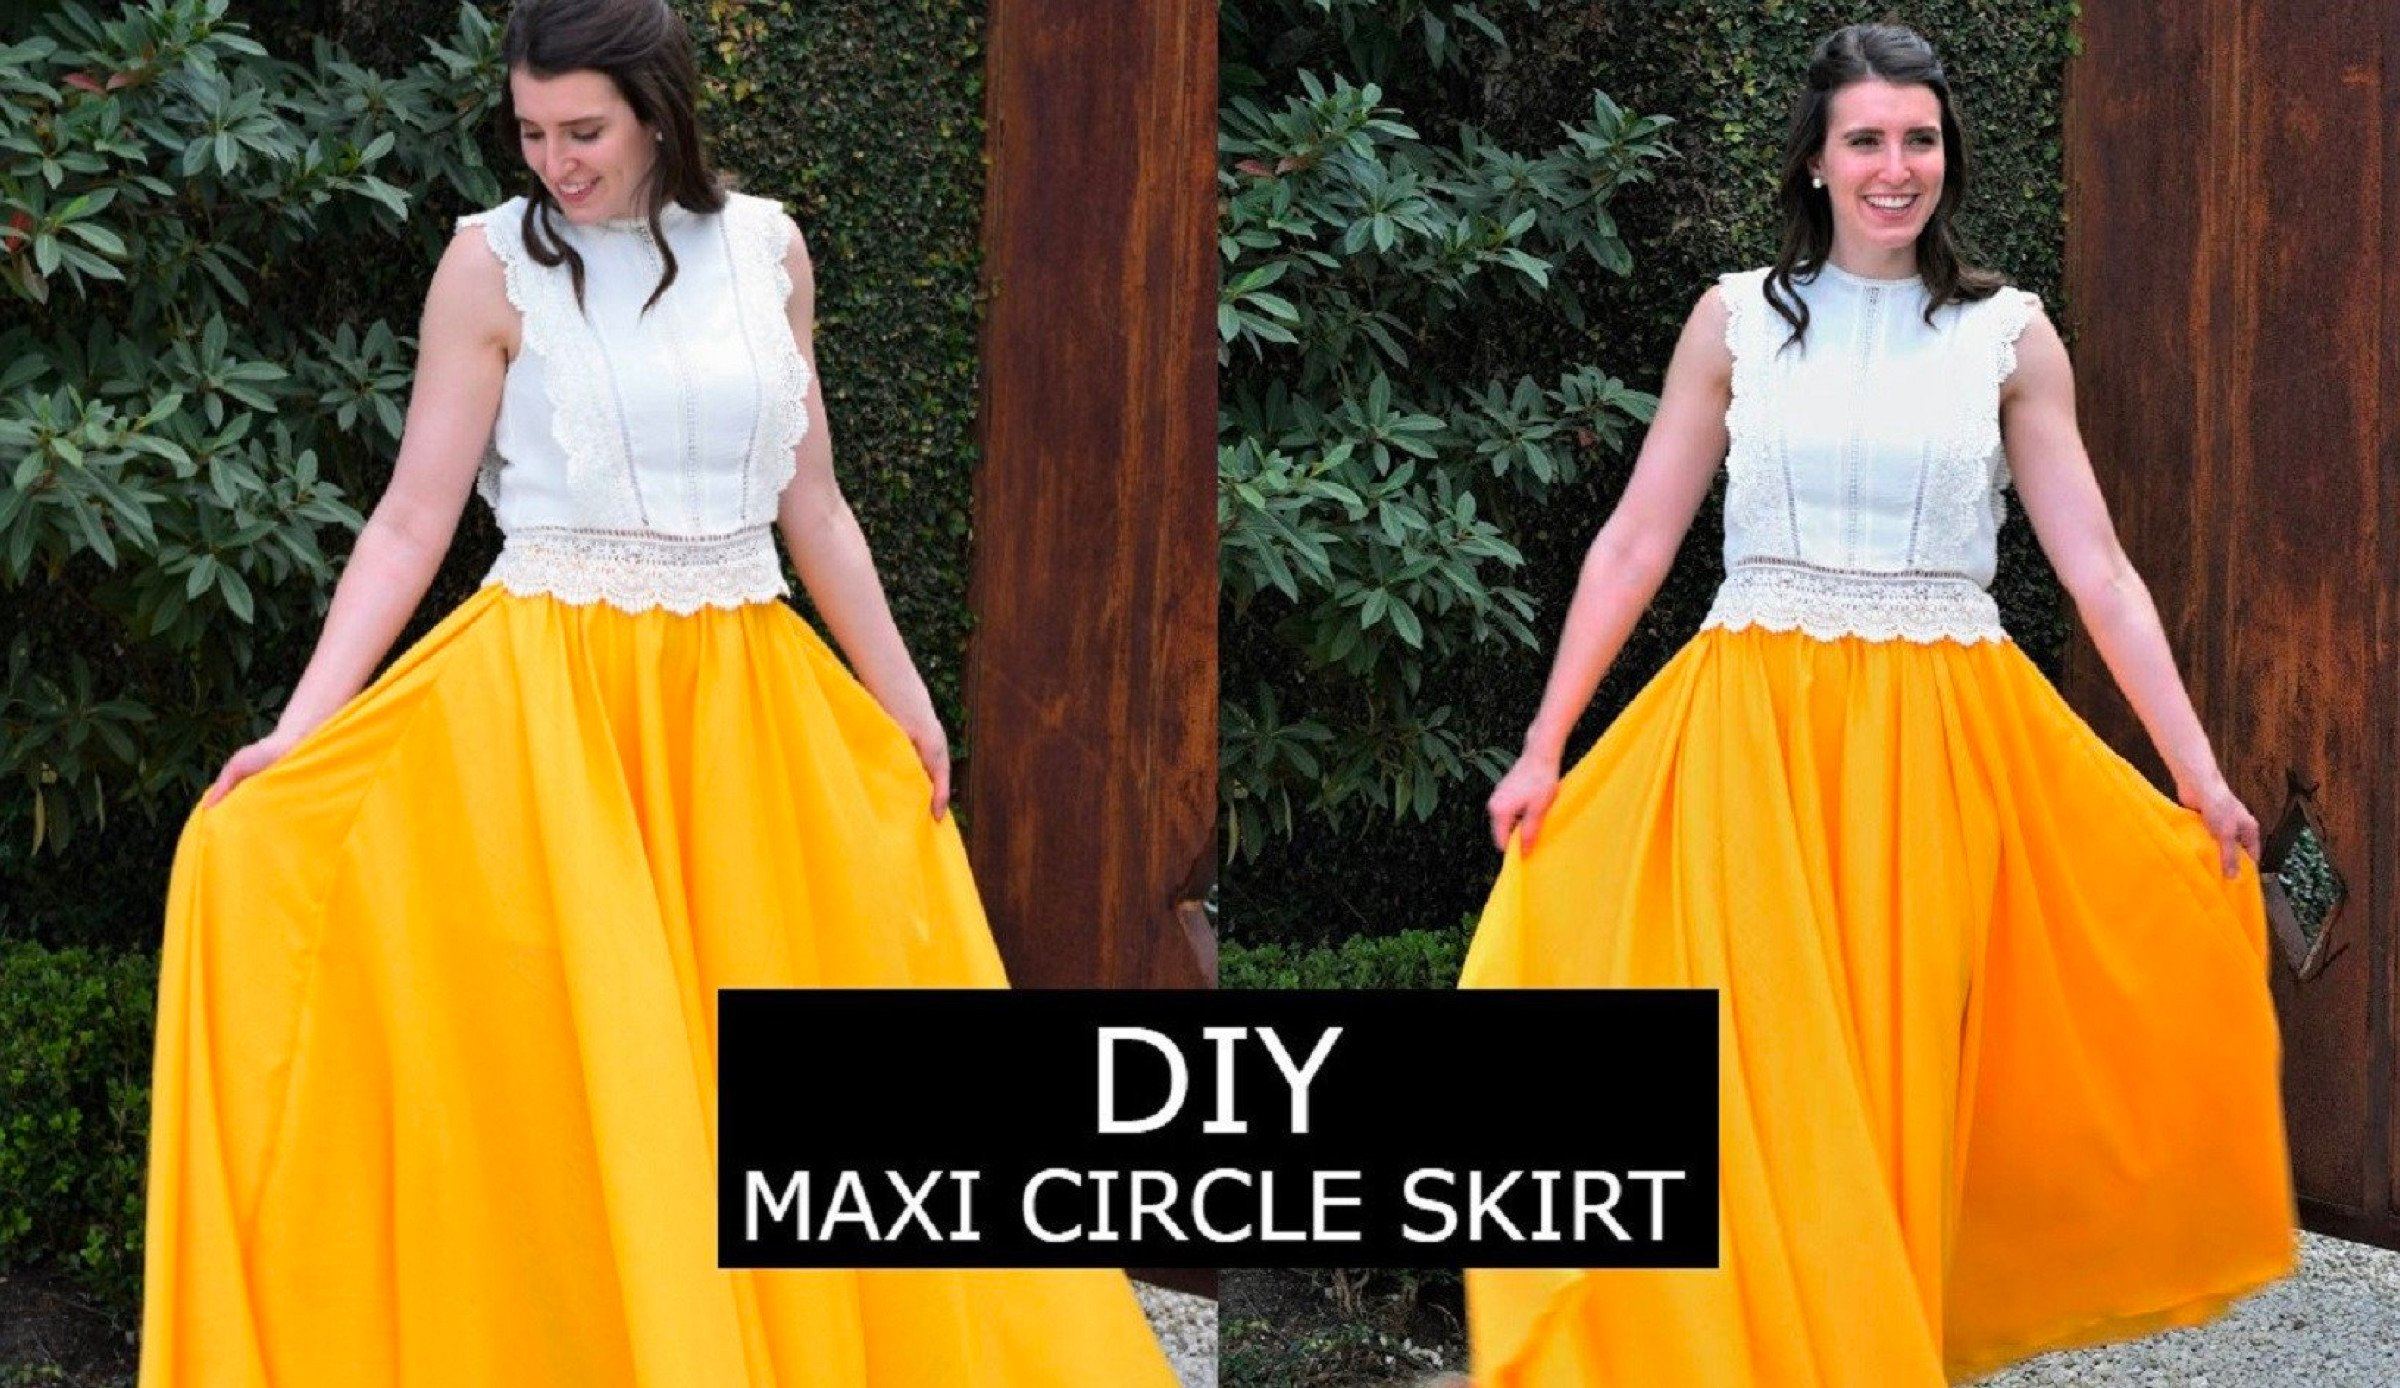 Tiered tulle maxi skirt, Twik, Women's Skirts